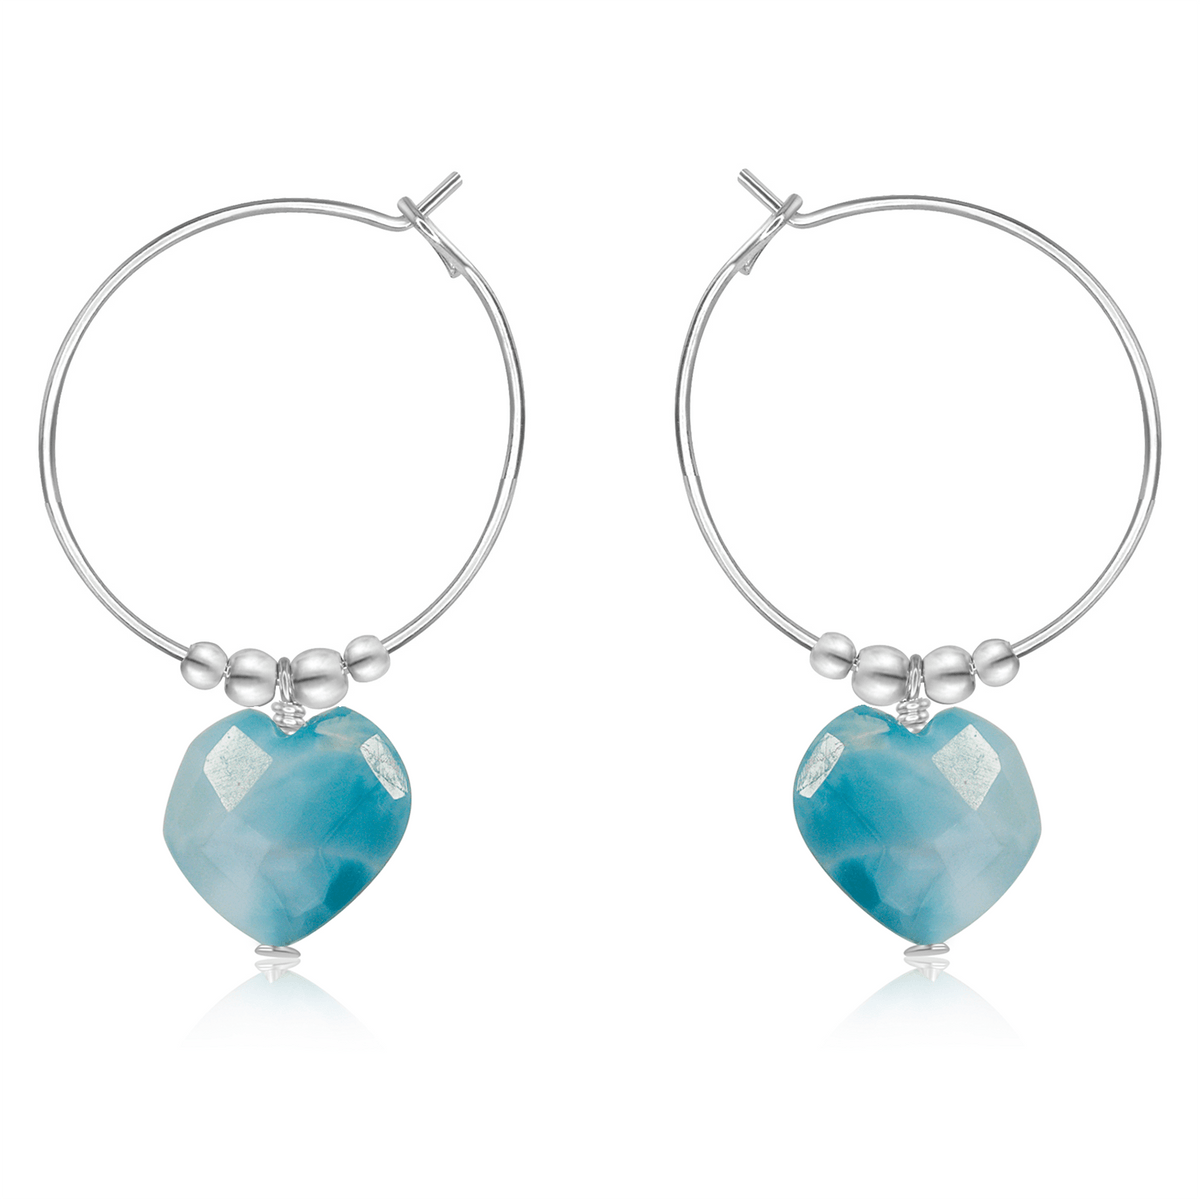 Larimar Crystal Heart Dangle Hoop Earrings - Larimar Crystal Heart Dangle Hoop Earrings - Sterling Silver - Luna Tide Handmade Crystal Jewellery